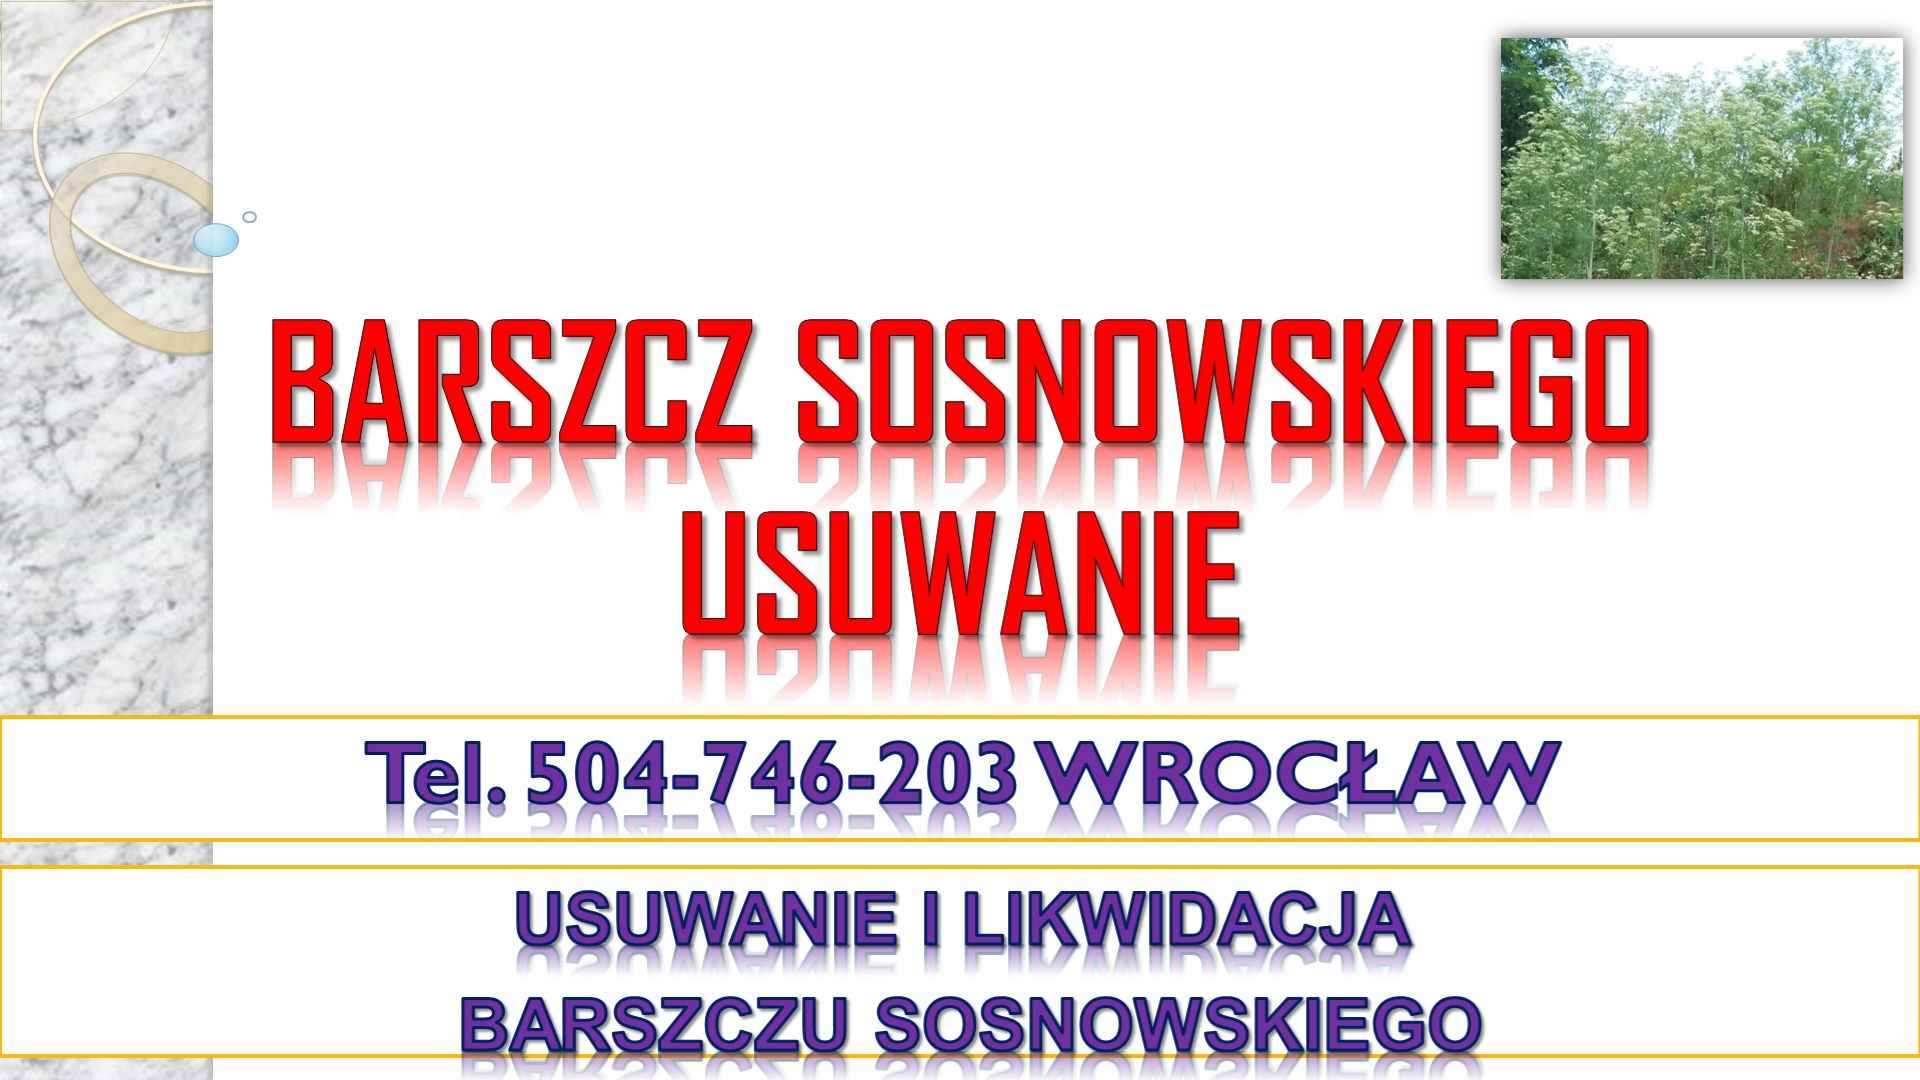 Usuwanie barszczu Sosnowskiego, cena, tel. 504-746-203, Wrocław. Psie Pole - zdjęcie 2